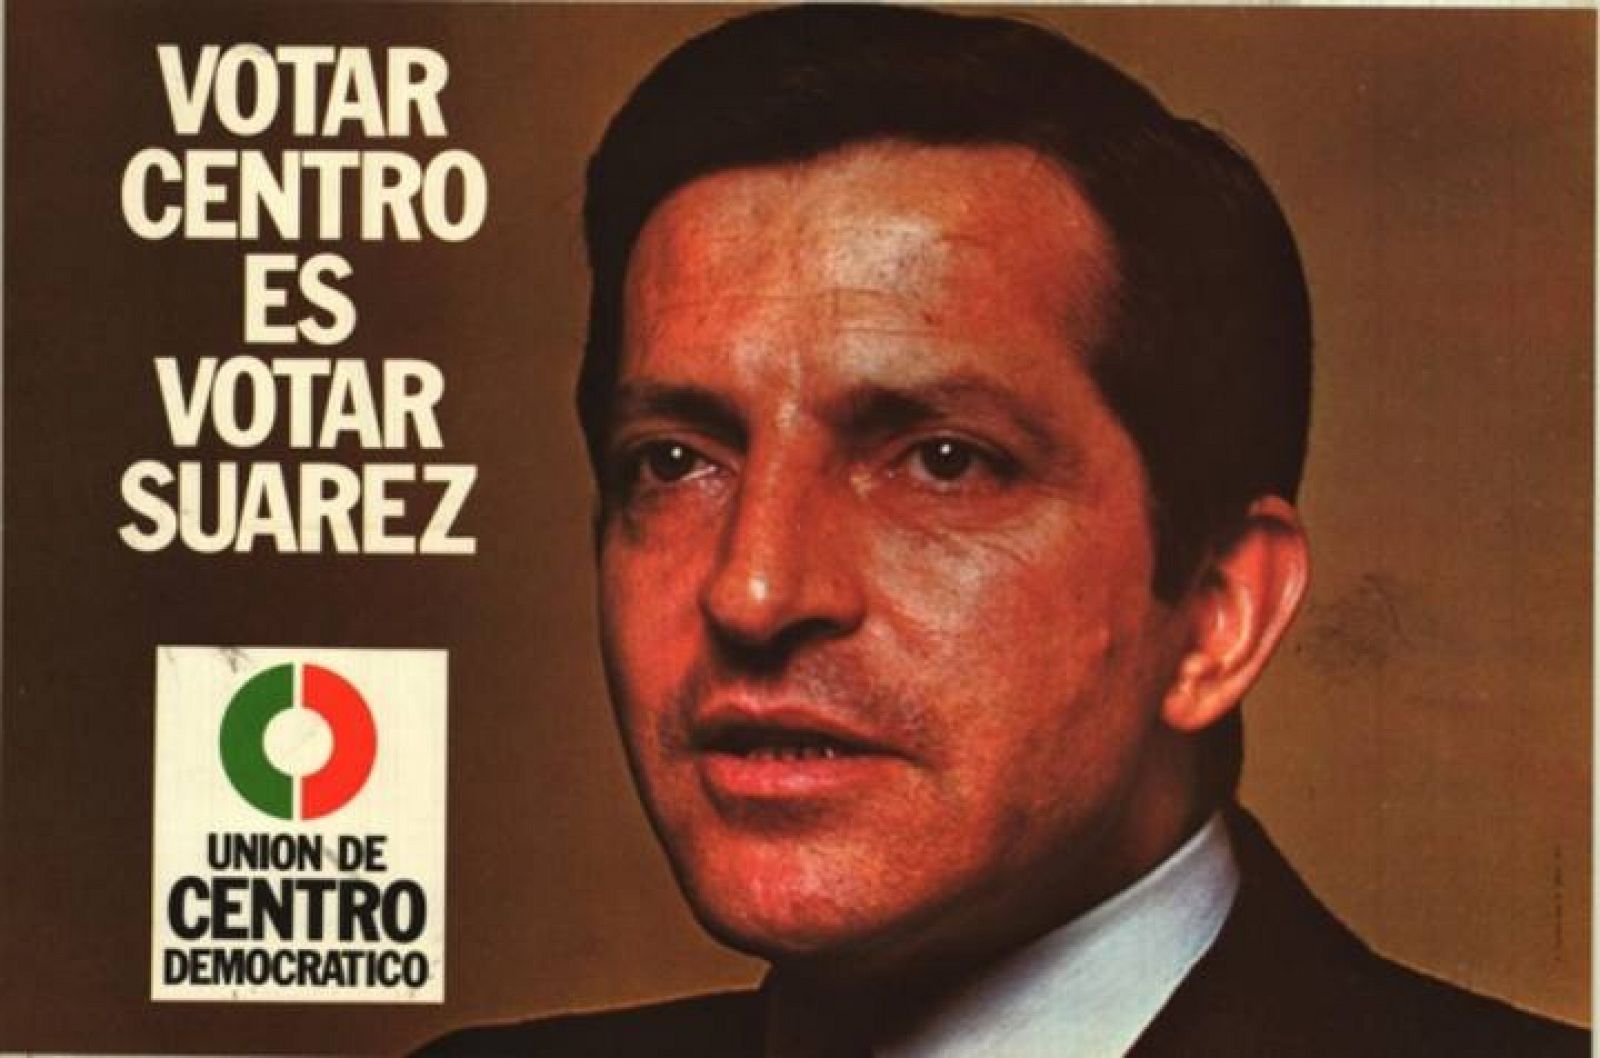 La identificación del centro político, UCD y Suárez era explícita en las elecciones de 1977.